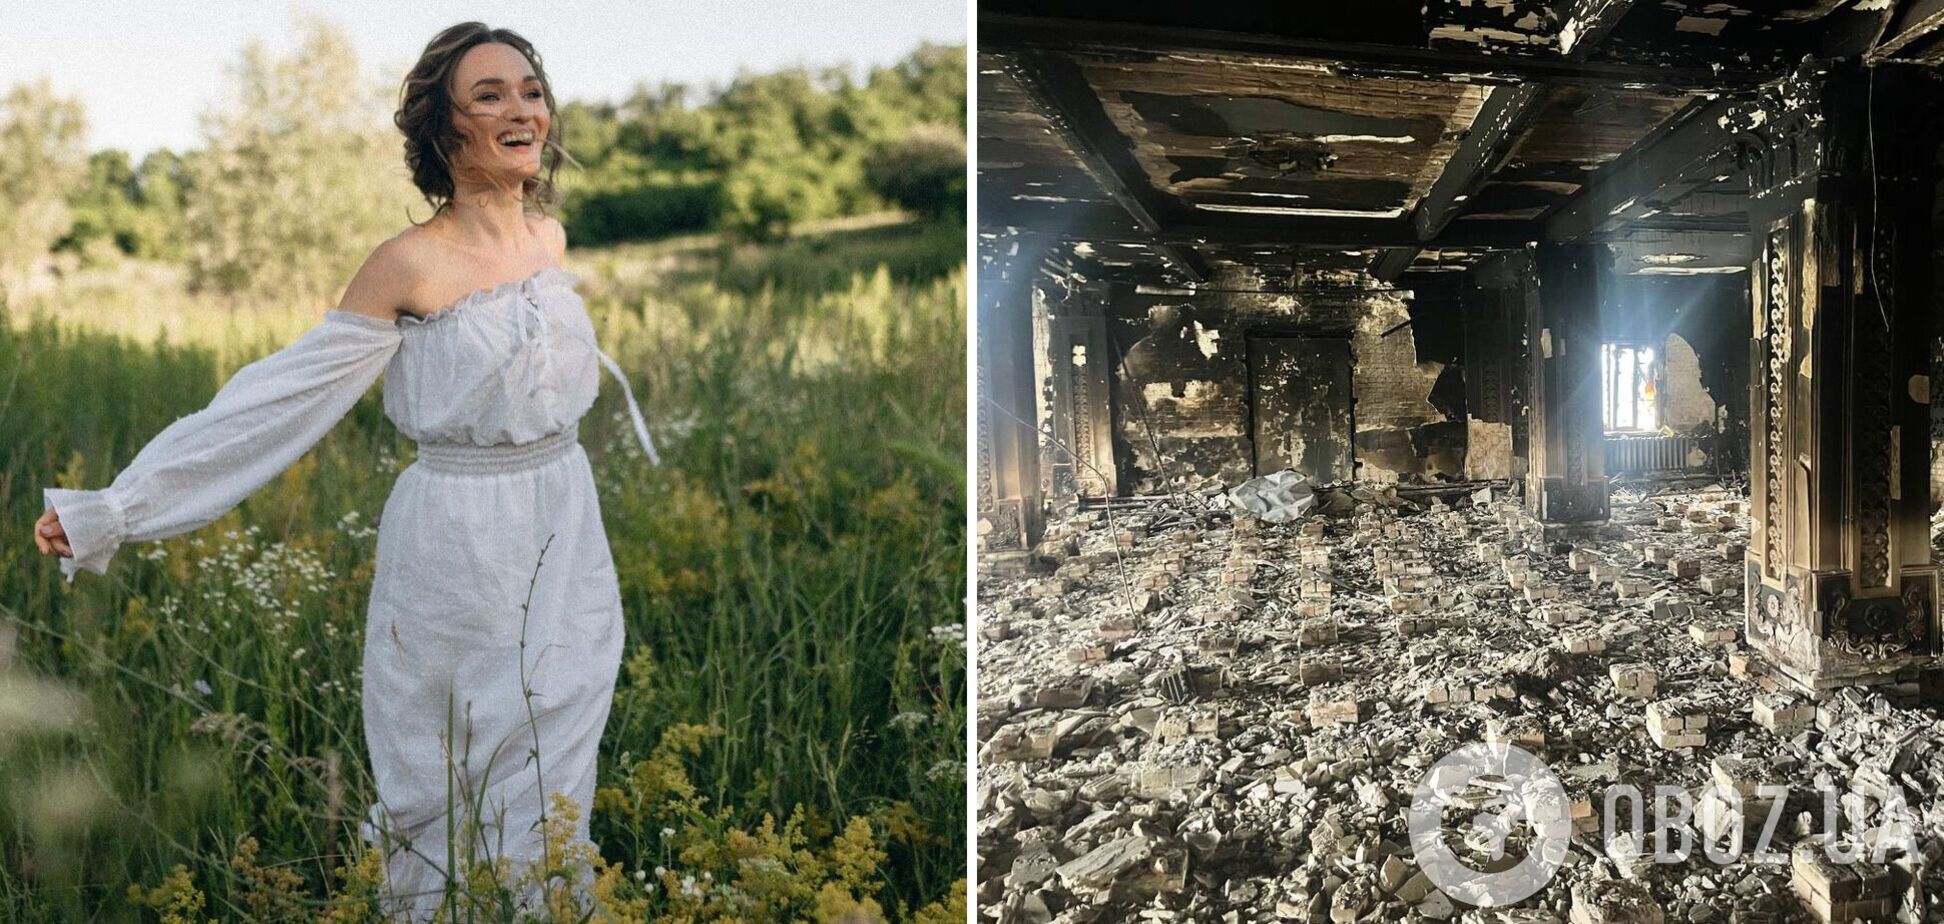 Українська блогерка знялася в рекламі відомого бренду в зруйнованому будинку культури в Ірпені: зчинився скандал